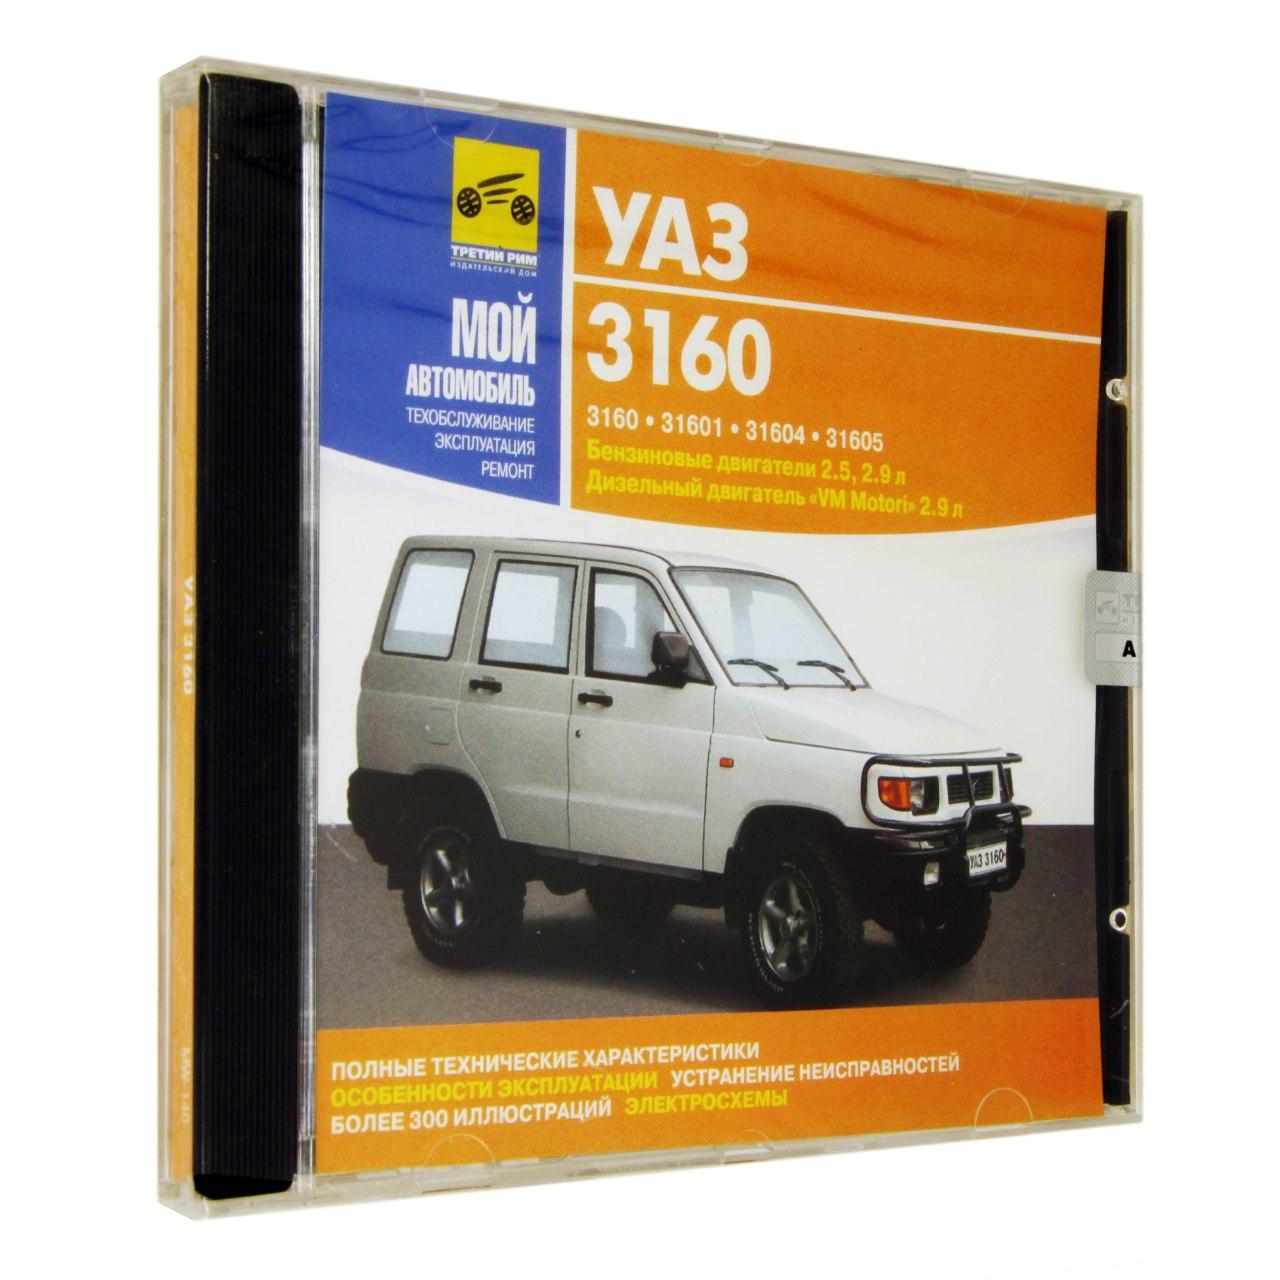 Компьютерный компакт-диск УАЗ 3160. ’Мой автомобиль’. (ПК), фирма "Медиа Ворлд", 1CD